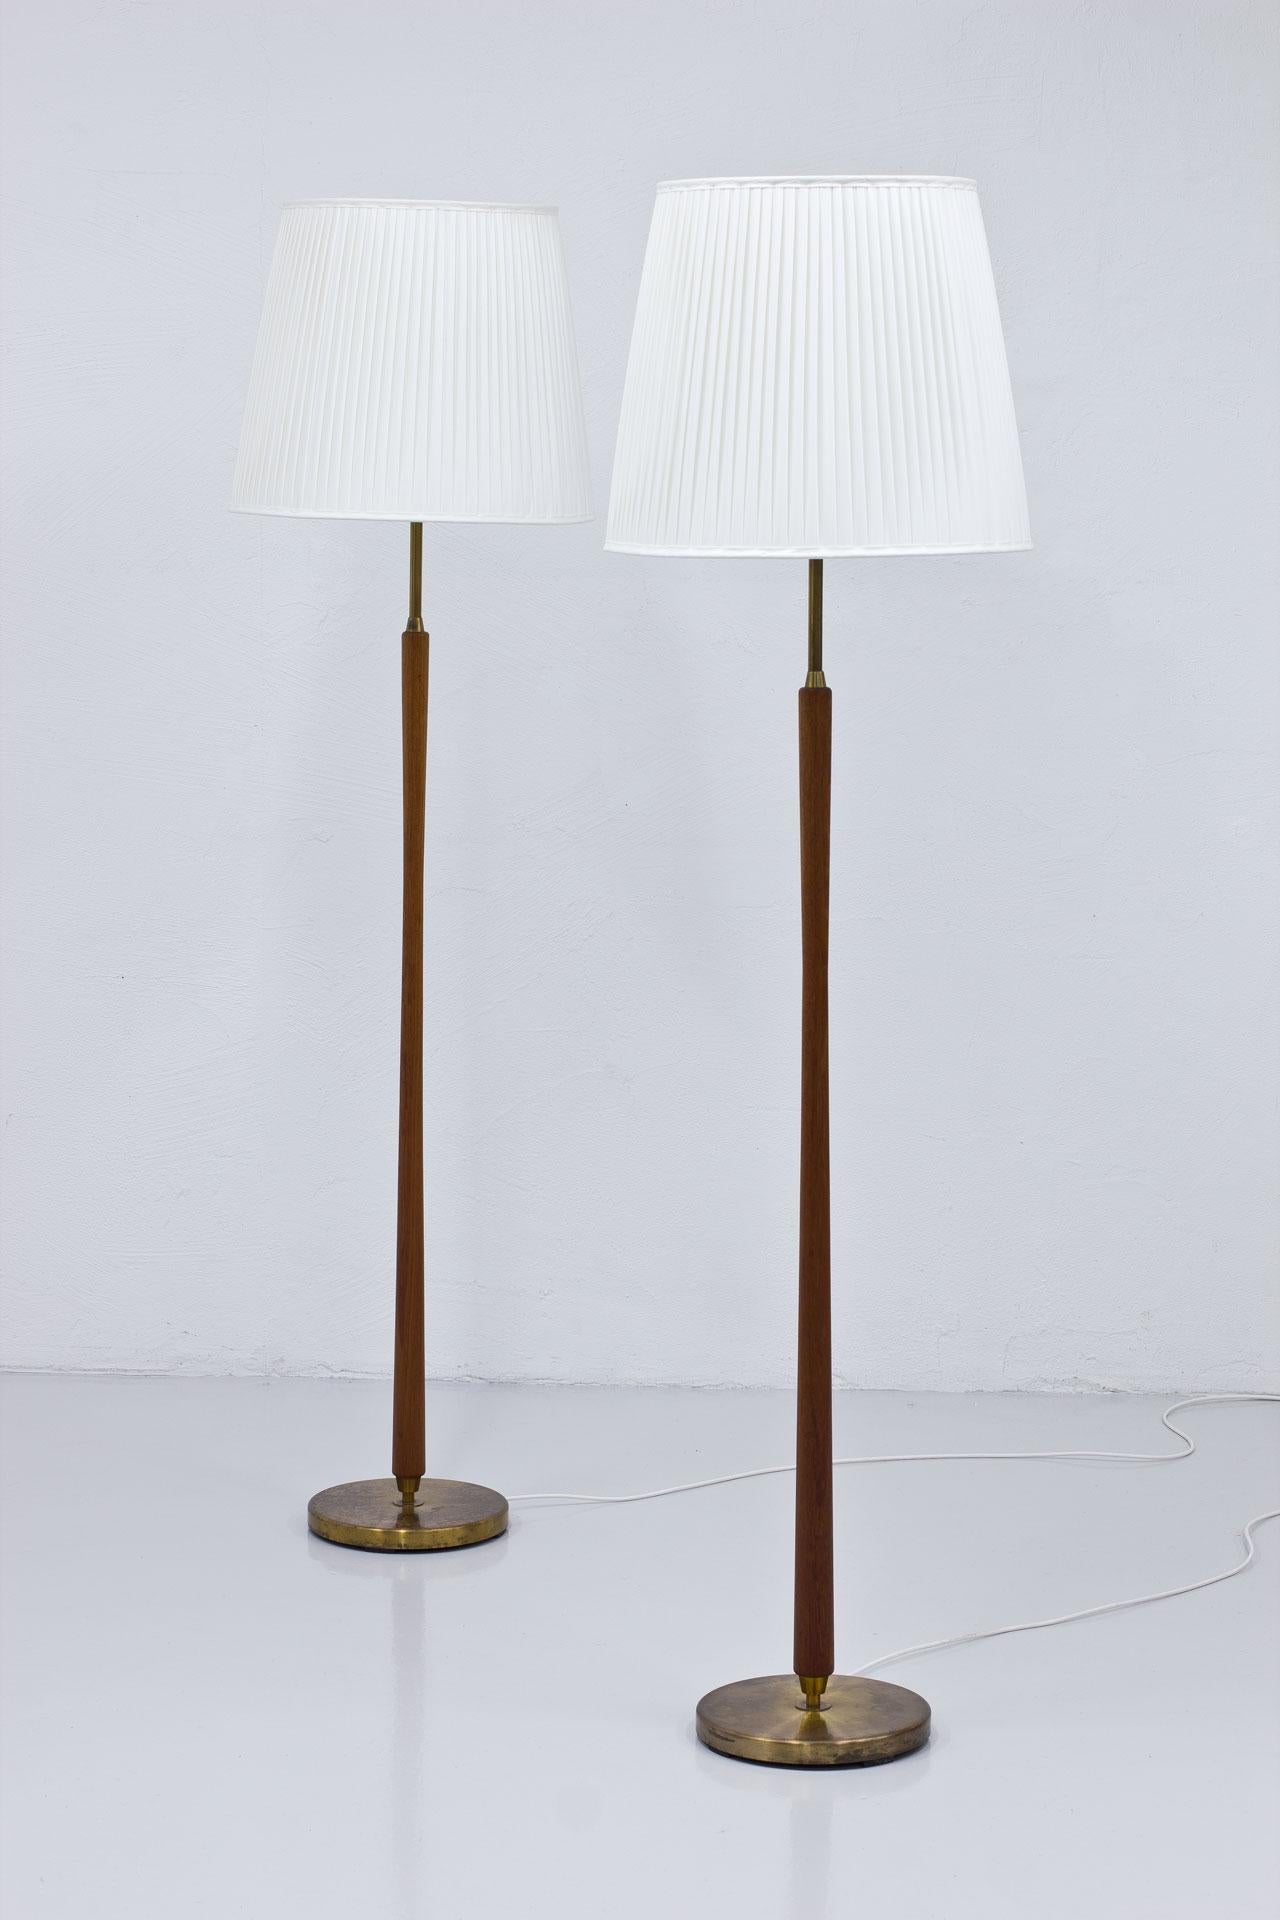 20th Century Pair of Scandinavian Modern Floor Lamps by ASEA, Sweden